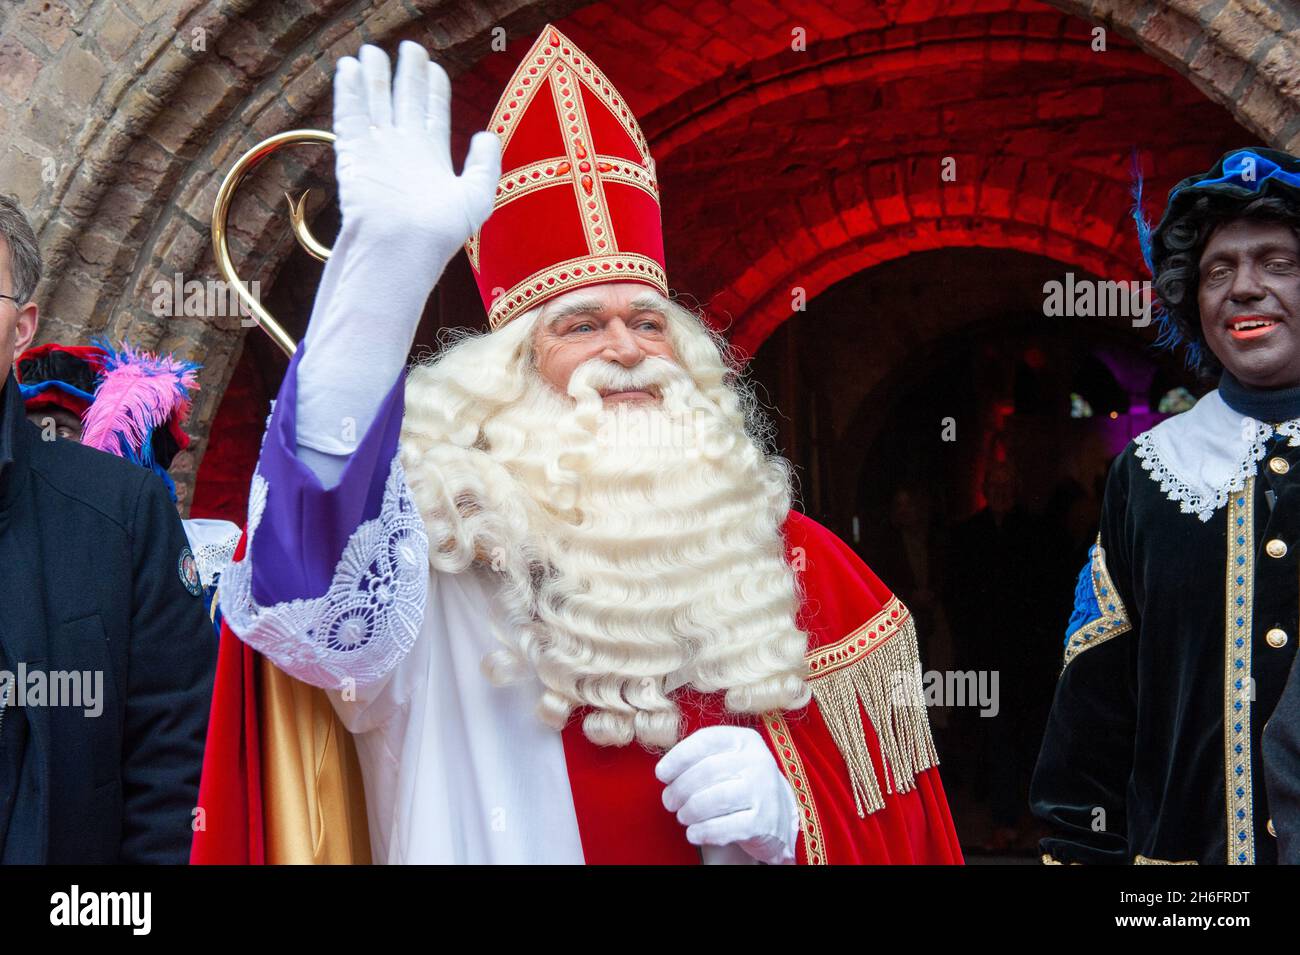 ENSCHEDE, PAÍSES BAJOS - 13 DE NOVIEMBRE de 2021: Retrato de la santa Claus holandesa llamado 'Sinterklaas' mientras llega a la ciudad. Foto de stock